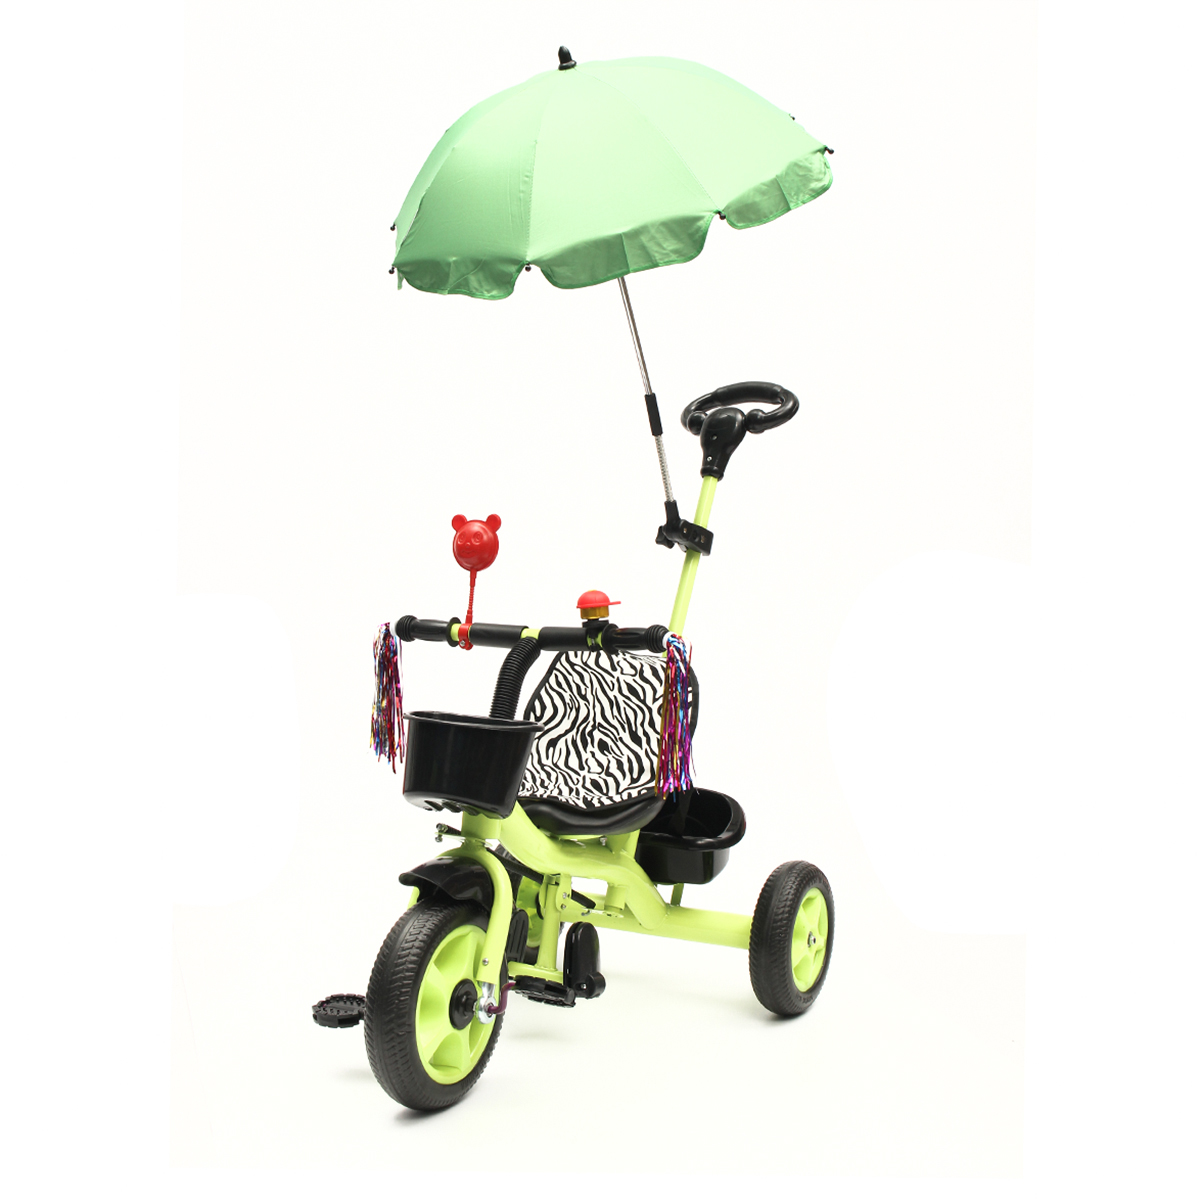 

BIKIGHT 3 колеса детей ездить на велосипеде трицикл детей ездить малышей баланс с зонтиком Baby мини велосипед безопасности ручка P